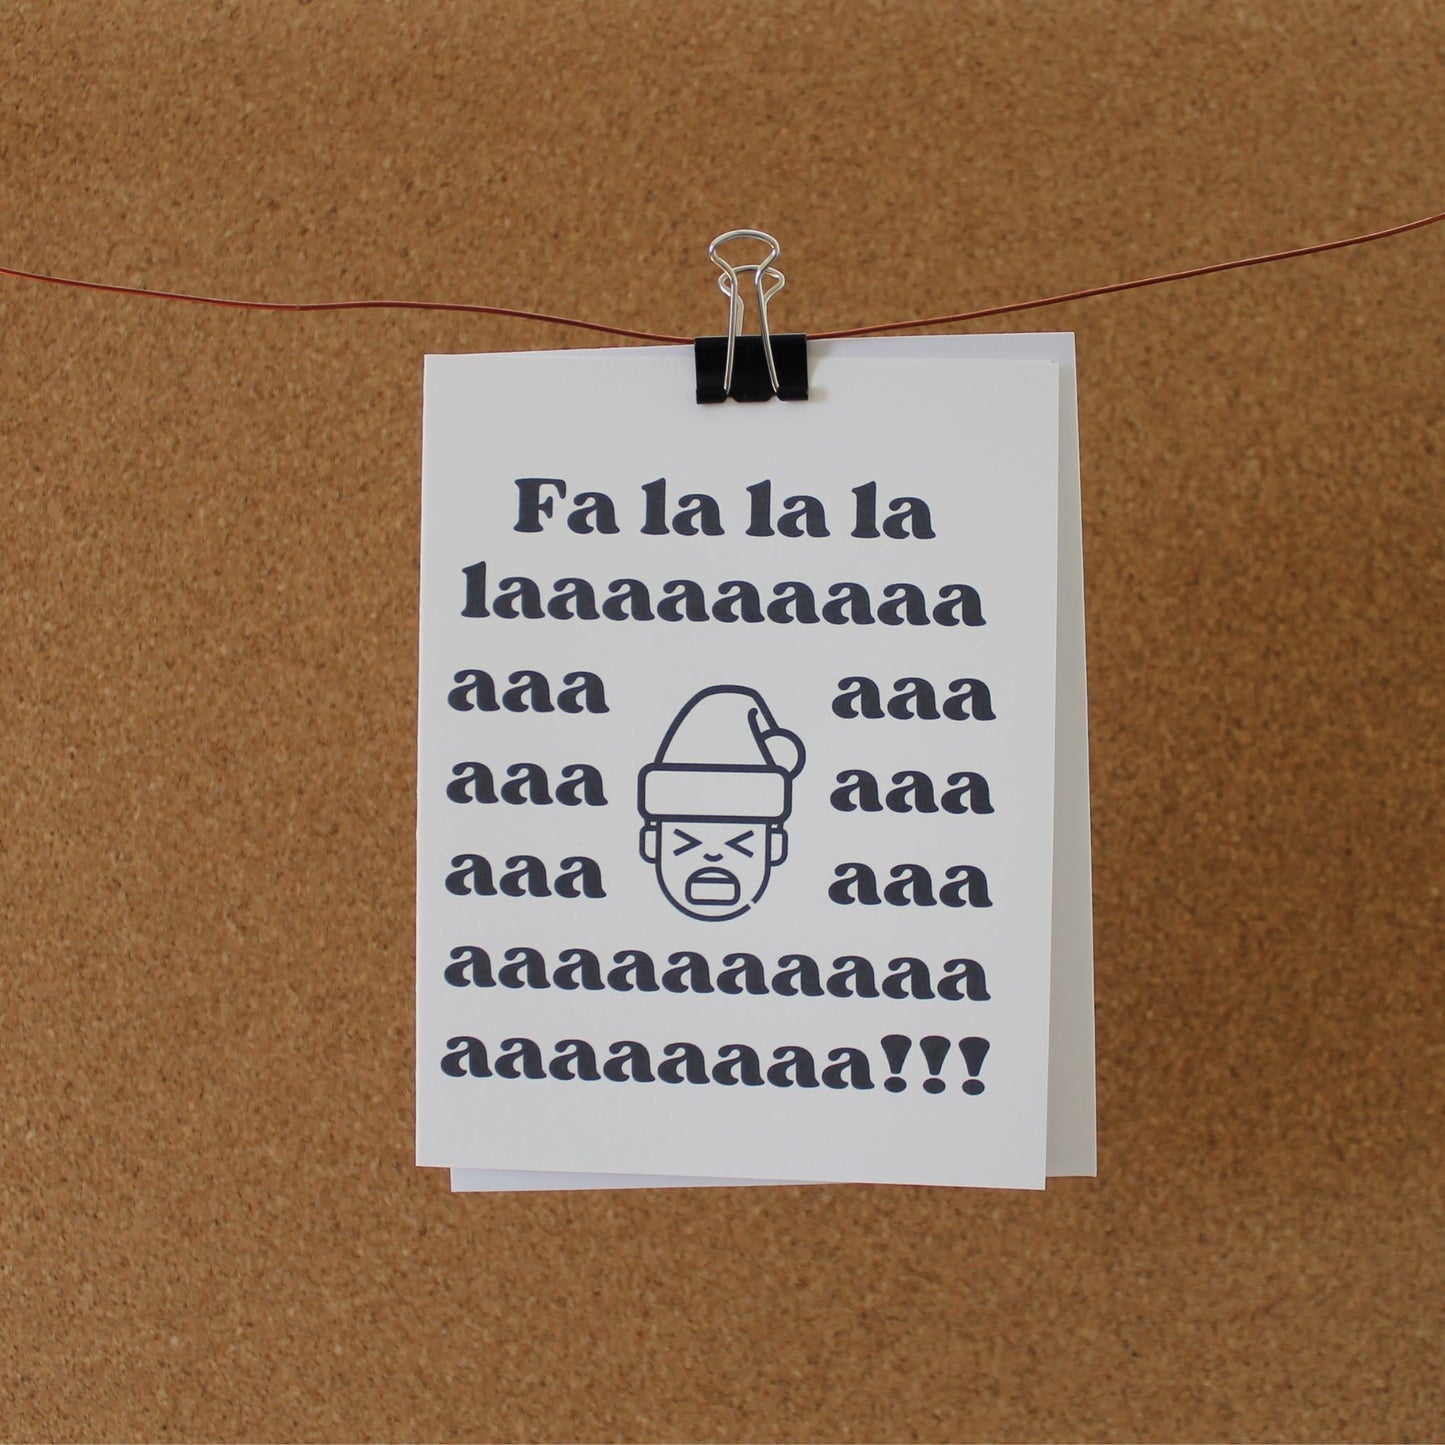 Funny Holiday Card: "Fa la la la laaaaaaaaaah!"